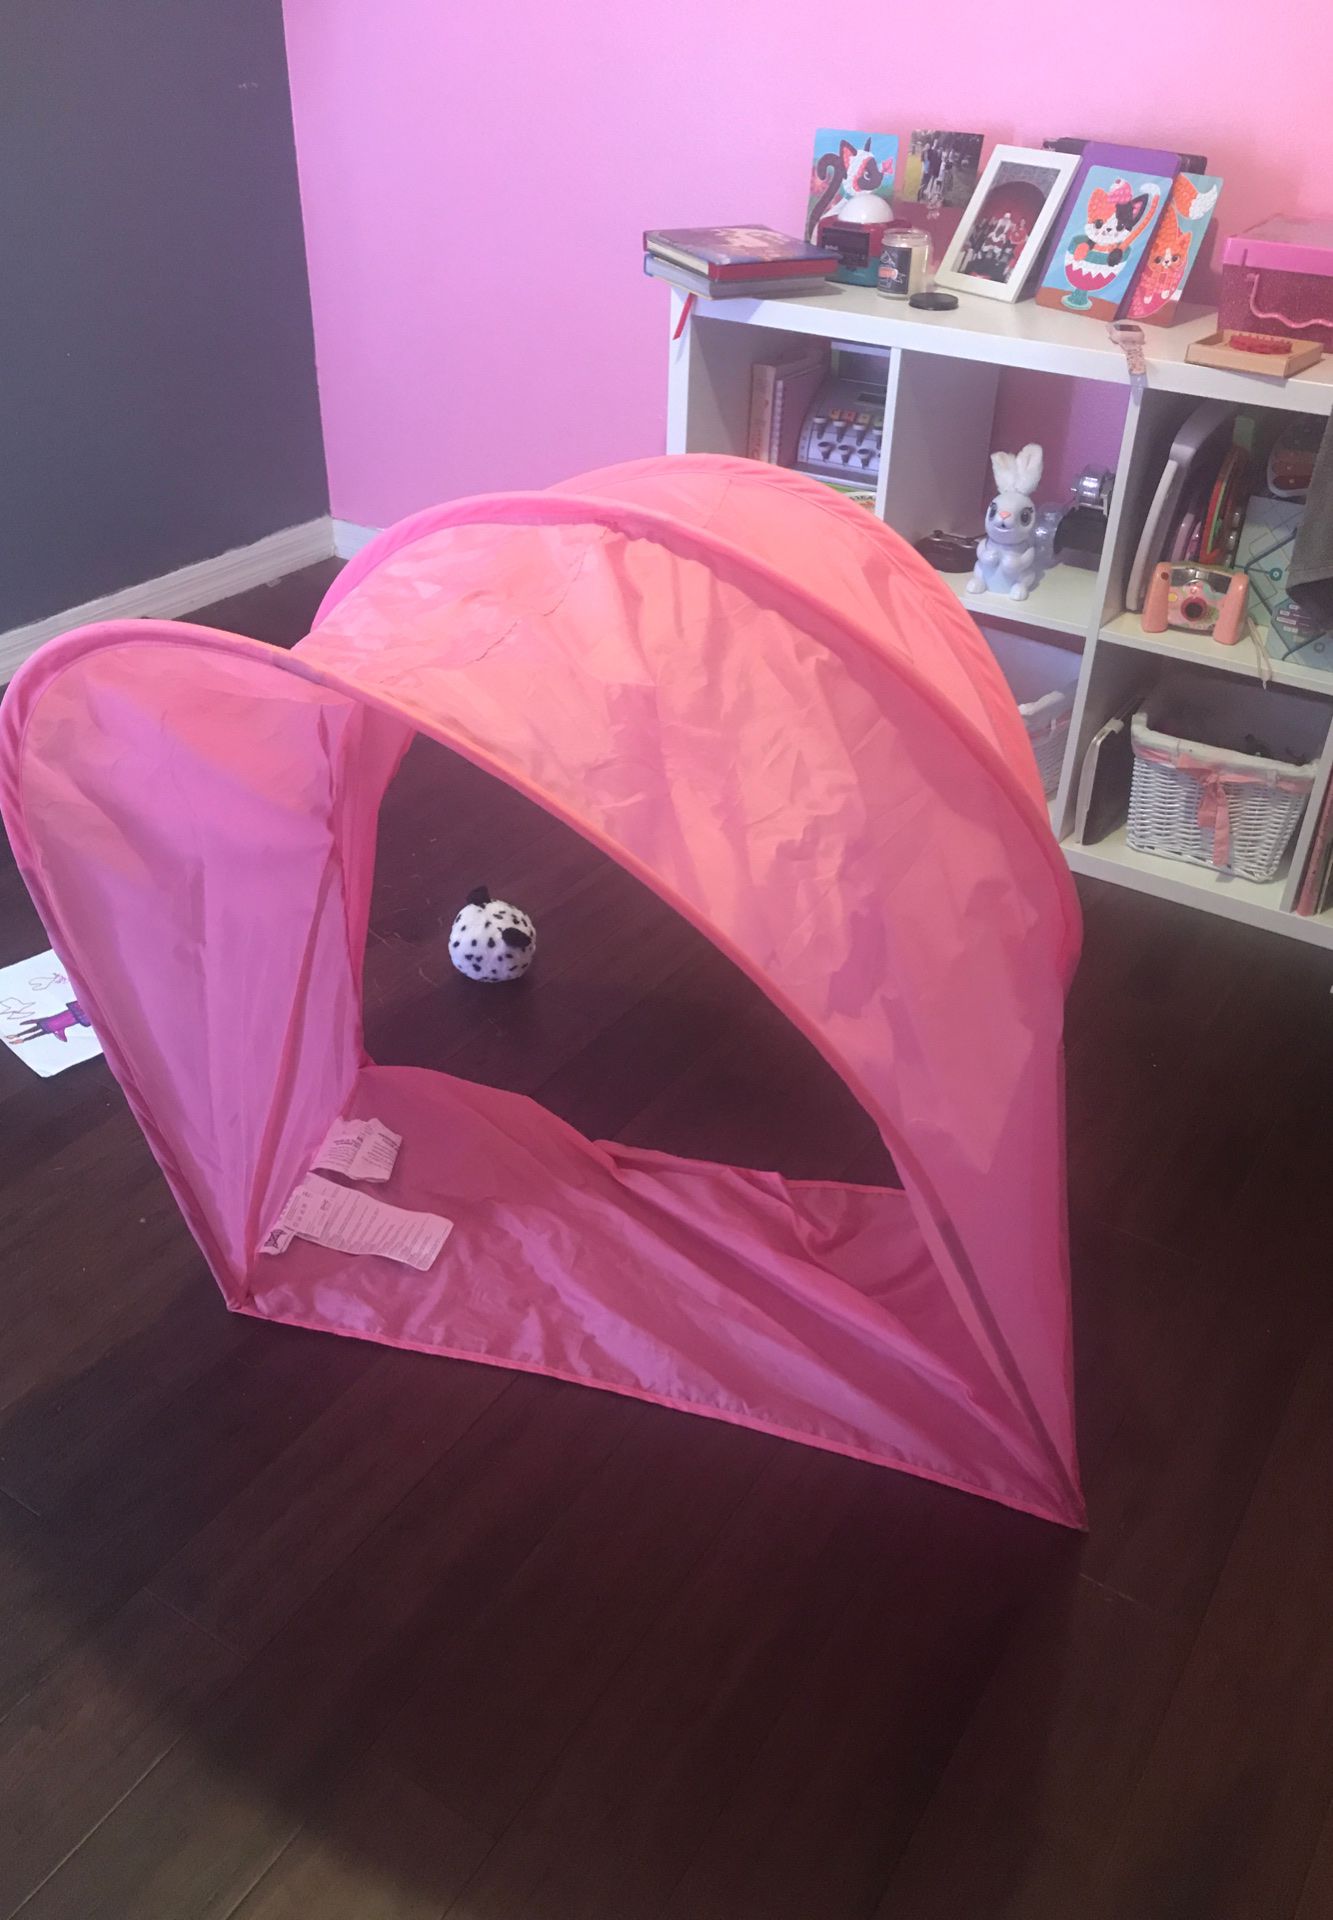 Canopy tee pee pink mattress IKEA Sufflett Bed Tent, Pink